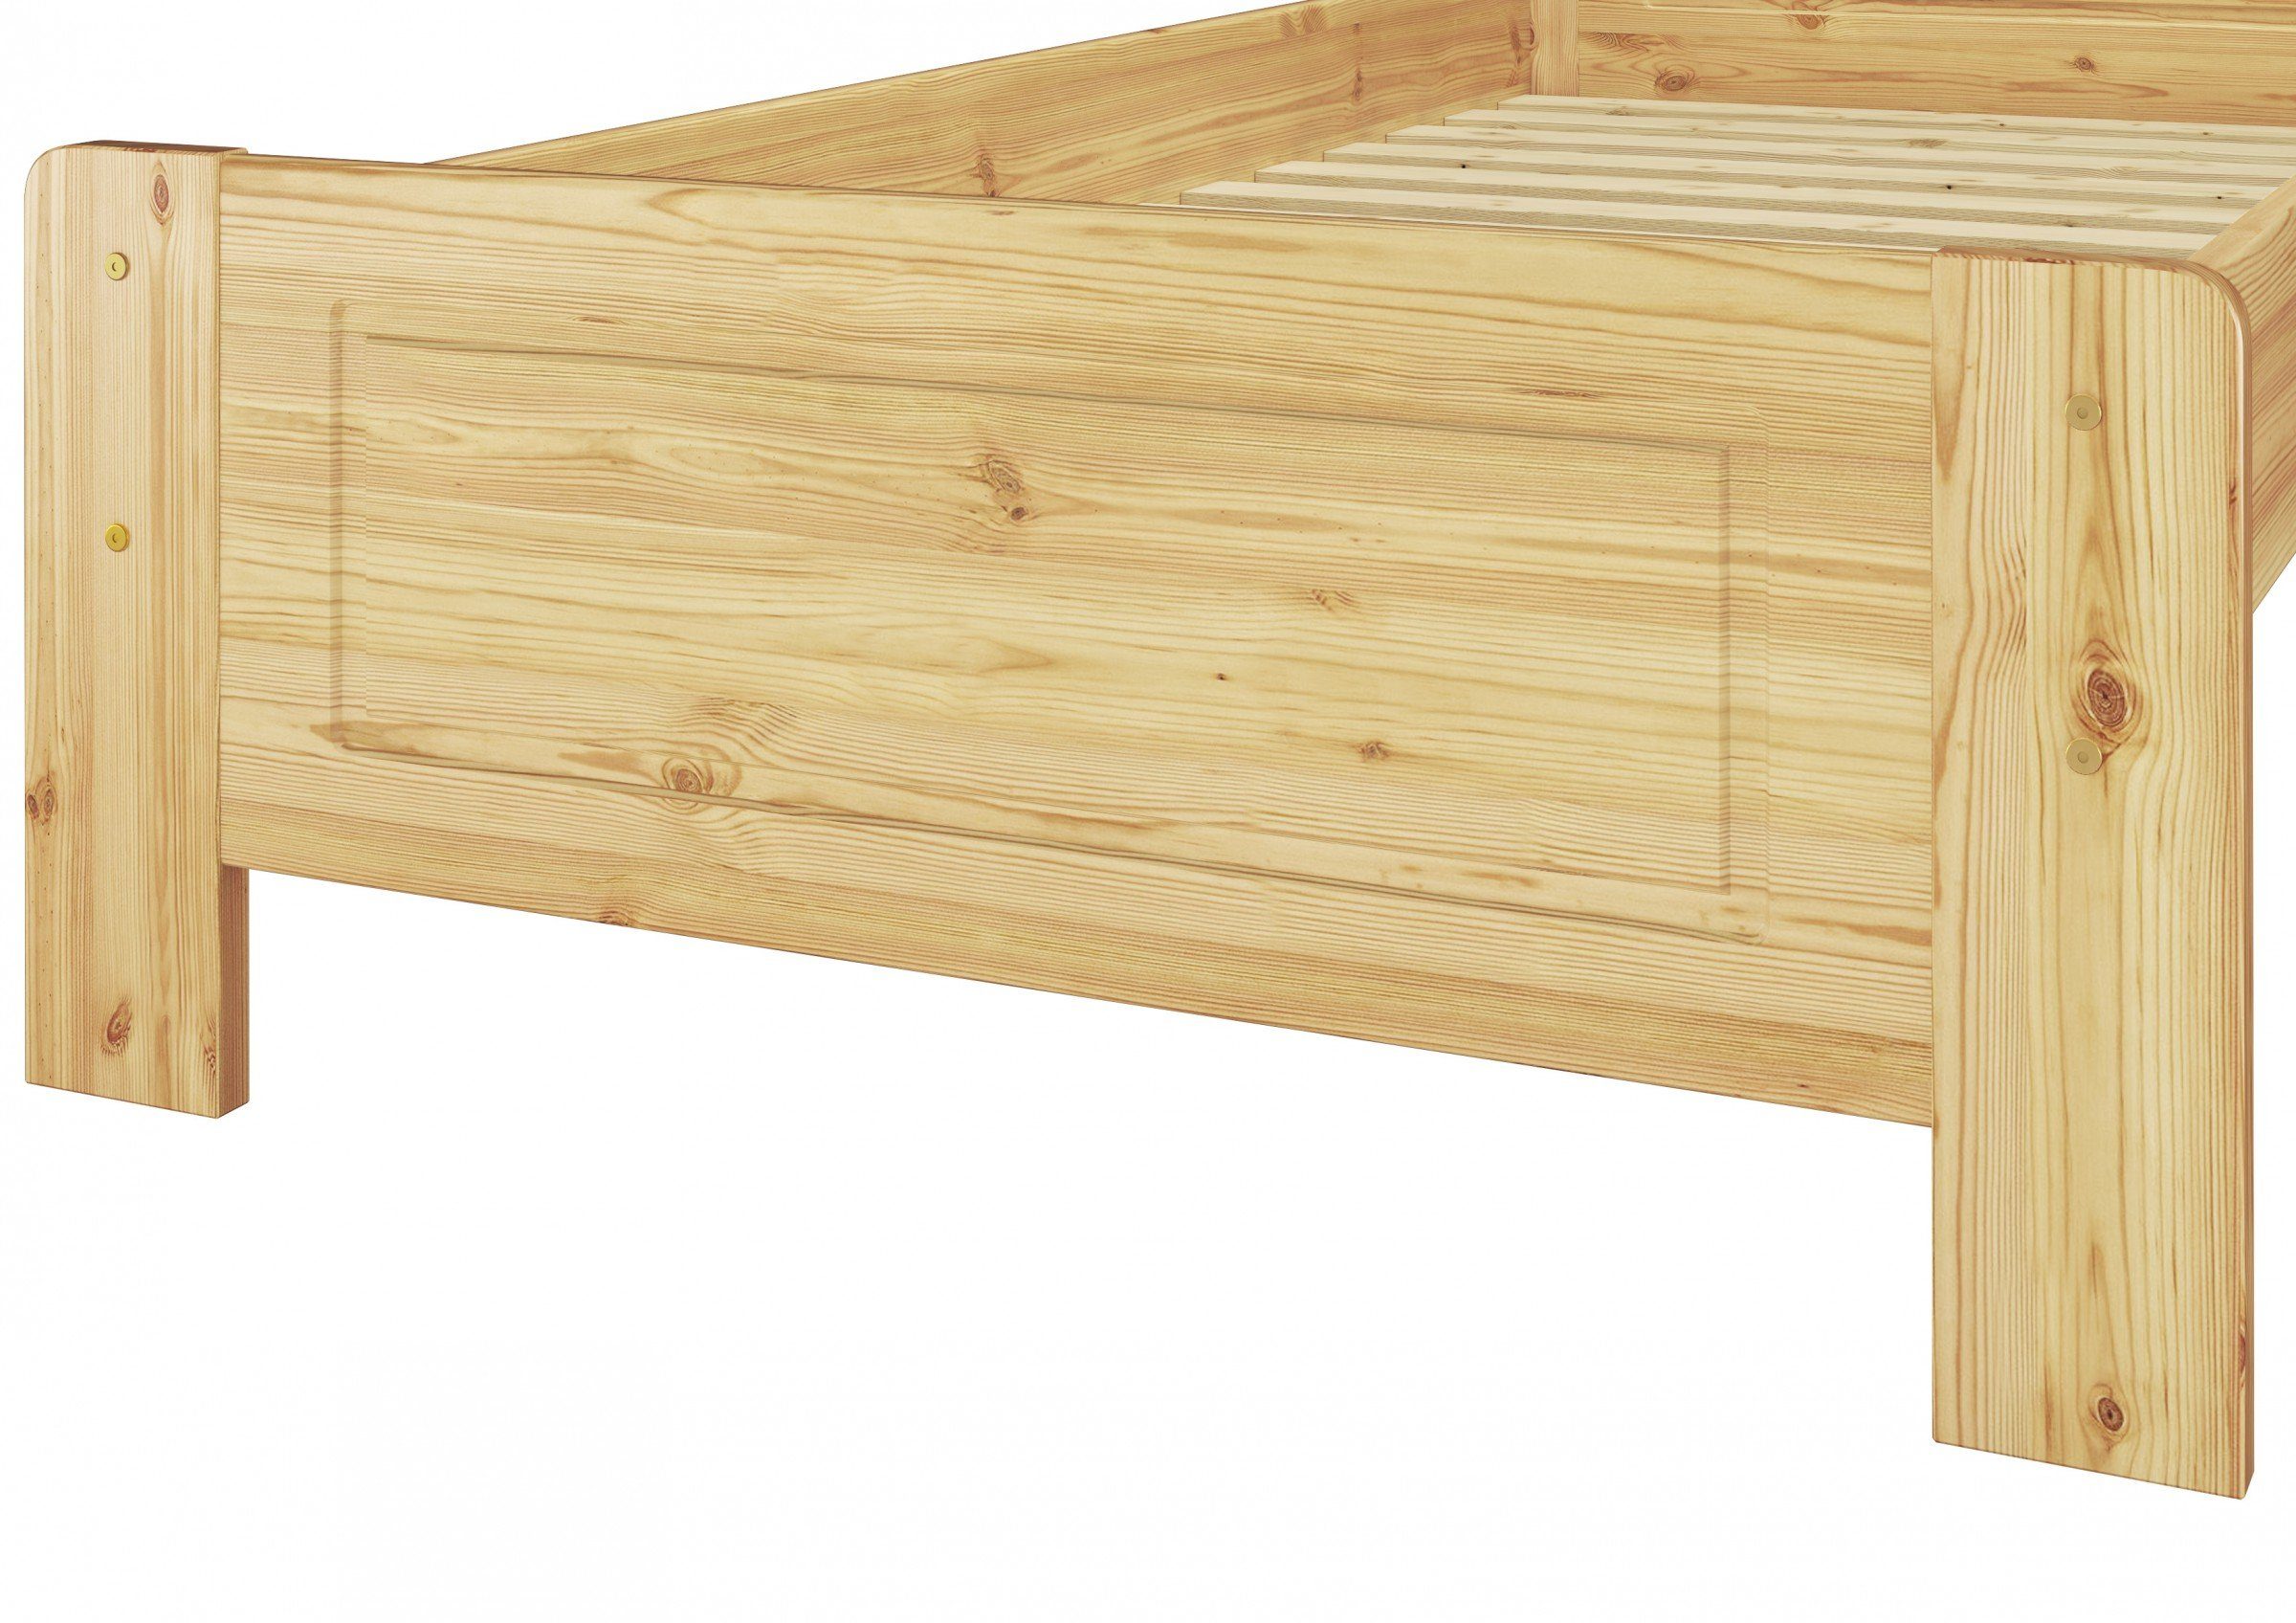 ERST-HOLZ Bett Holzbett mit Matratze, 90x200 Kieferfarblos Rost lackiert Landhaus Kiefer und